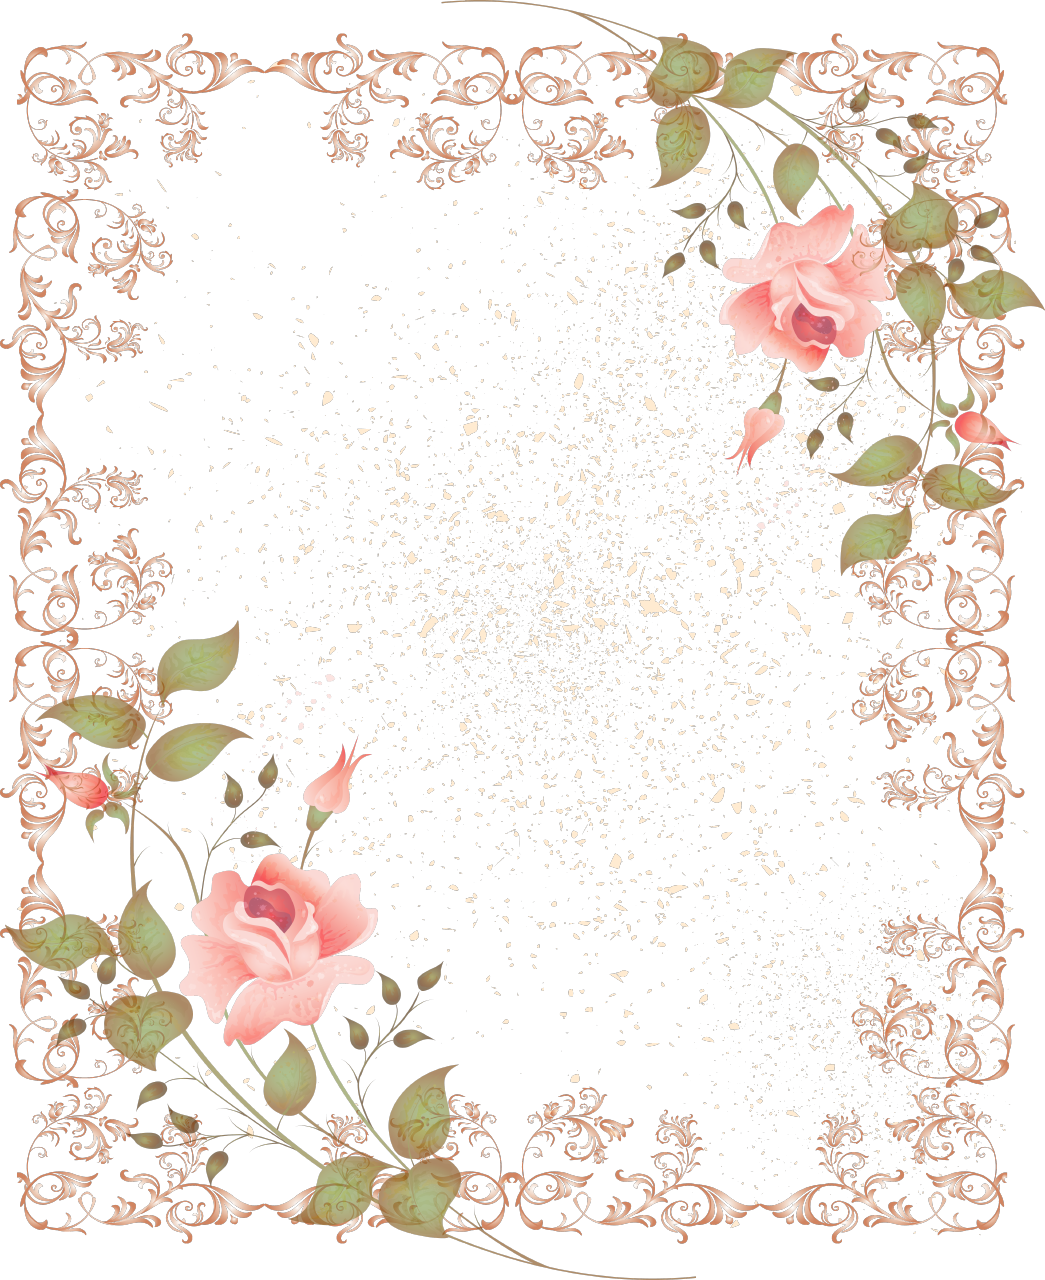 vintage floral border clip art